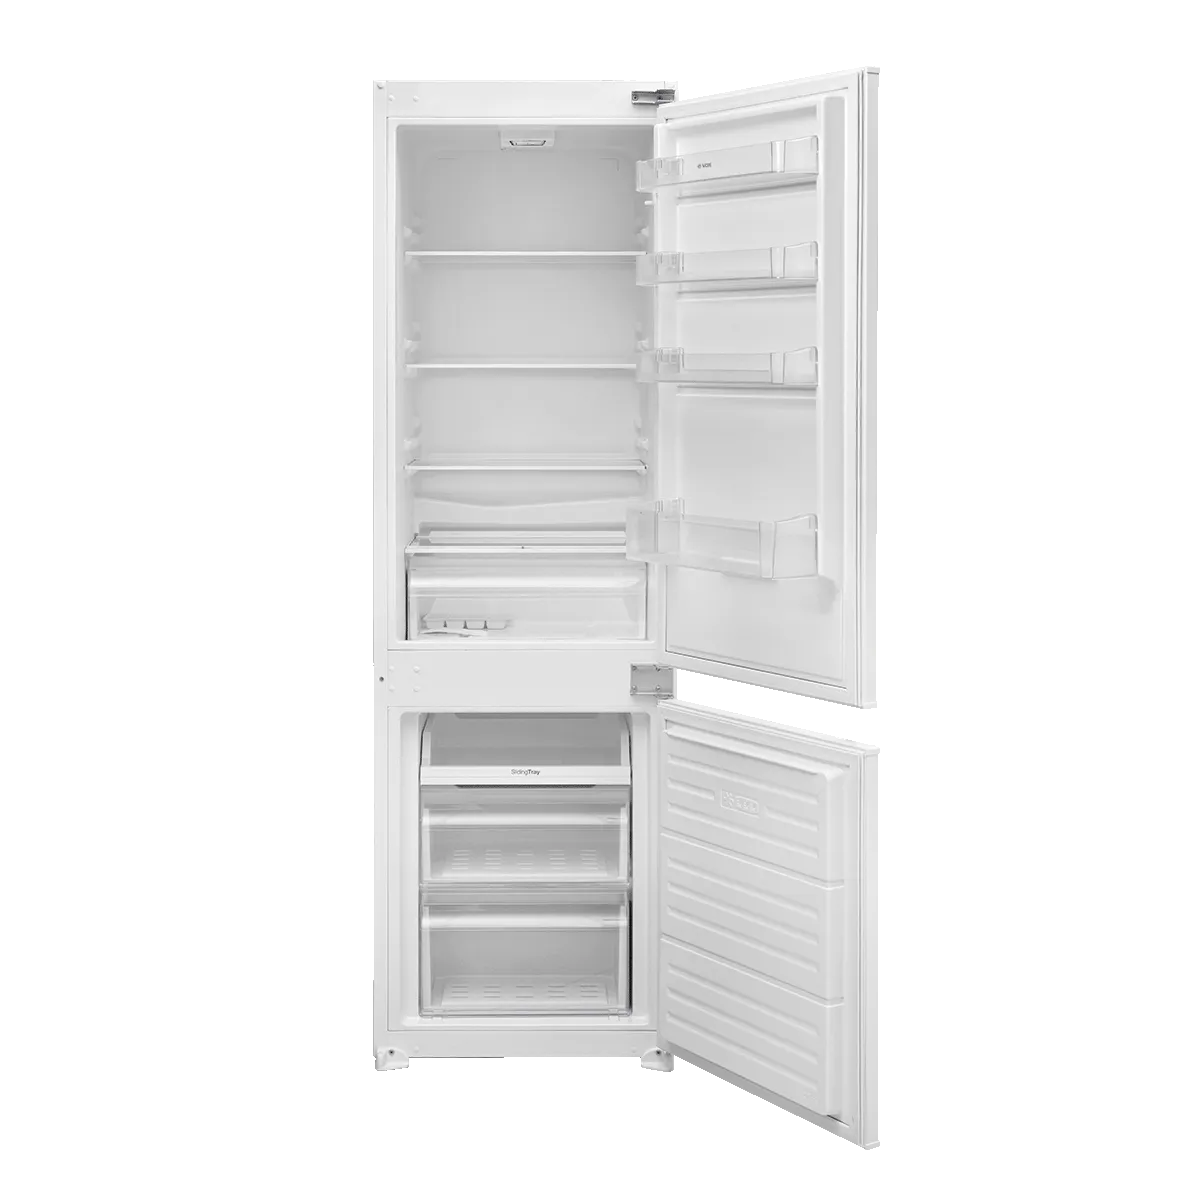 Built-in refrigerator IKK 3410E 